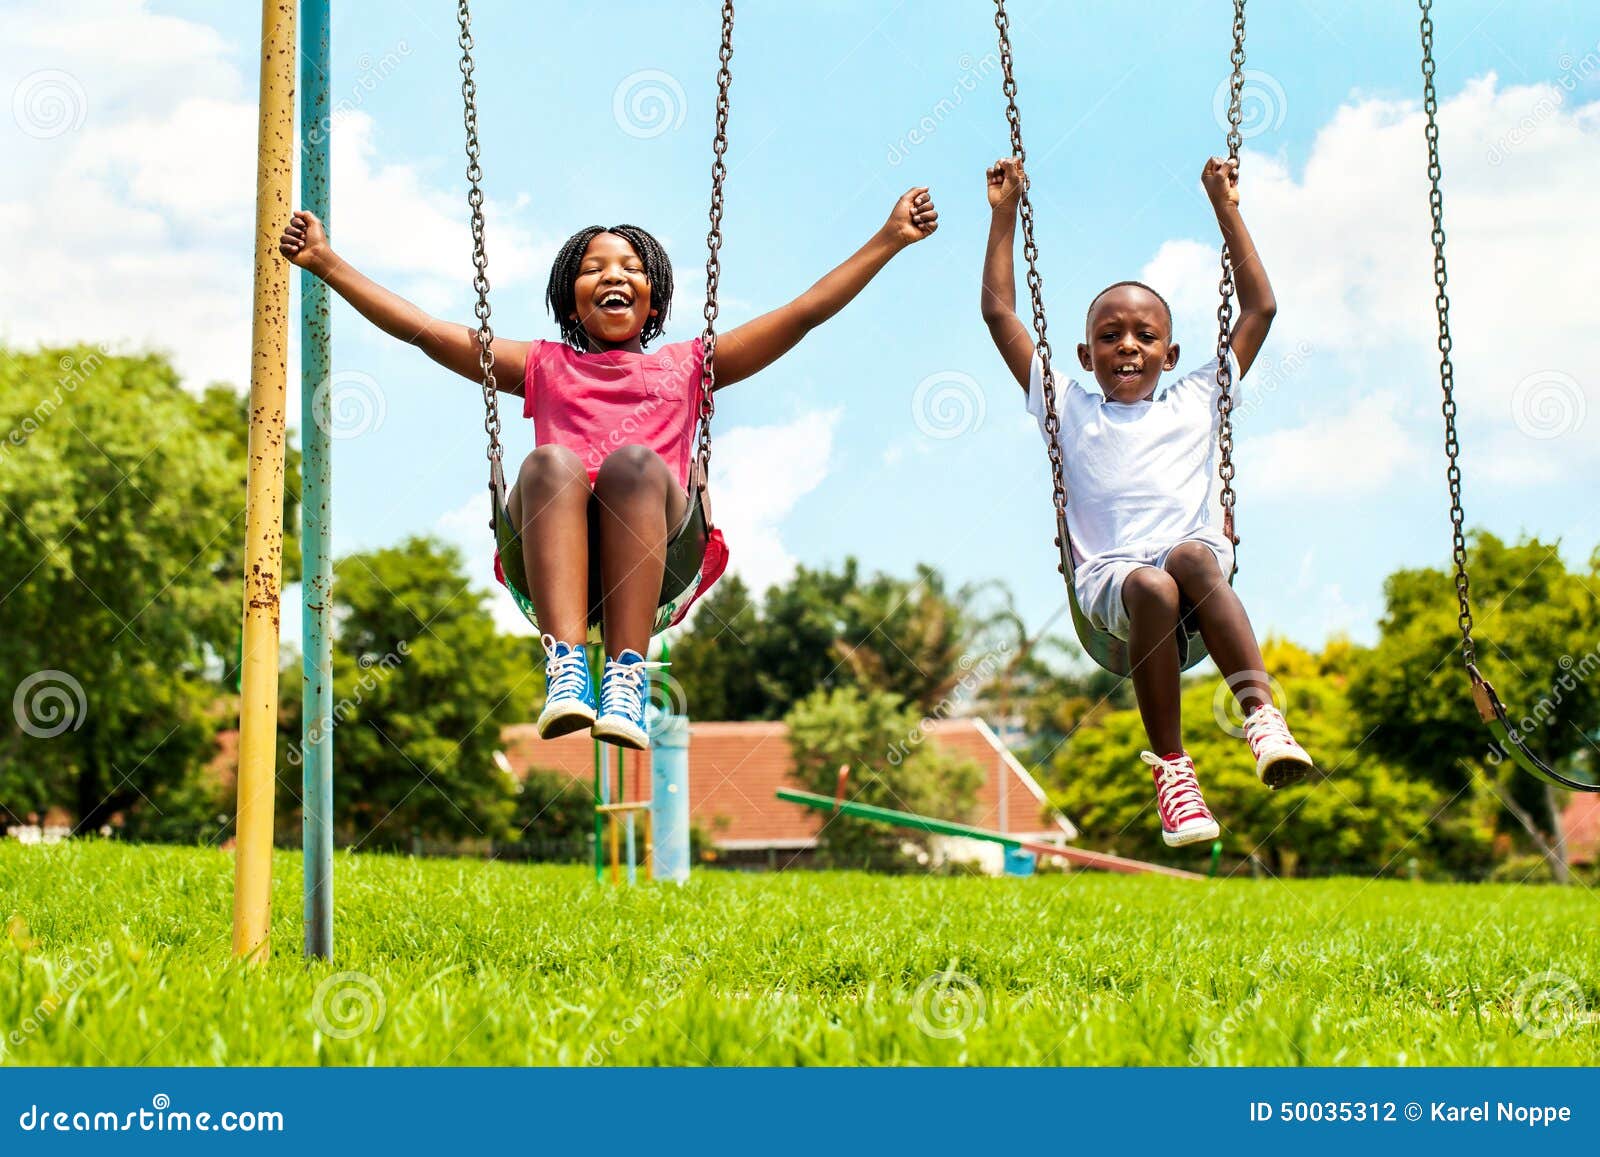 African Kids Playing On Swing Neighborhood. Stock Photo 50035312 -